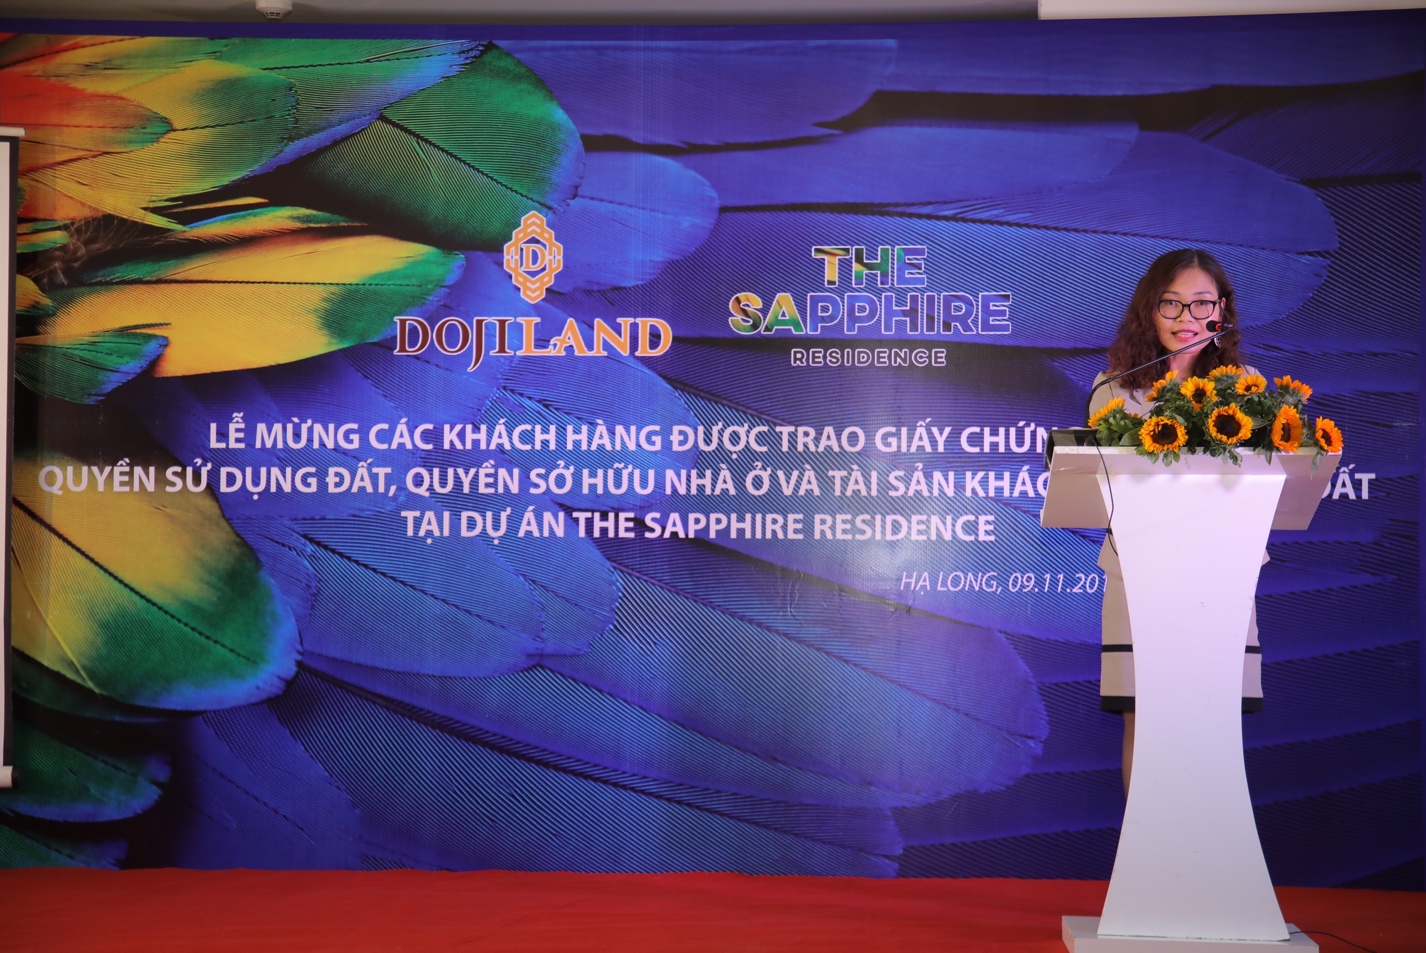 Bà Nguyễn Khánh Tâm, Phó Tổng giám đốc Dojiland - Đại diện Chủ đầu tư phát biểu tại buổi lễ.